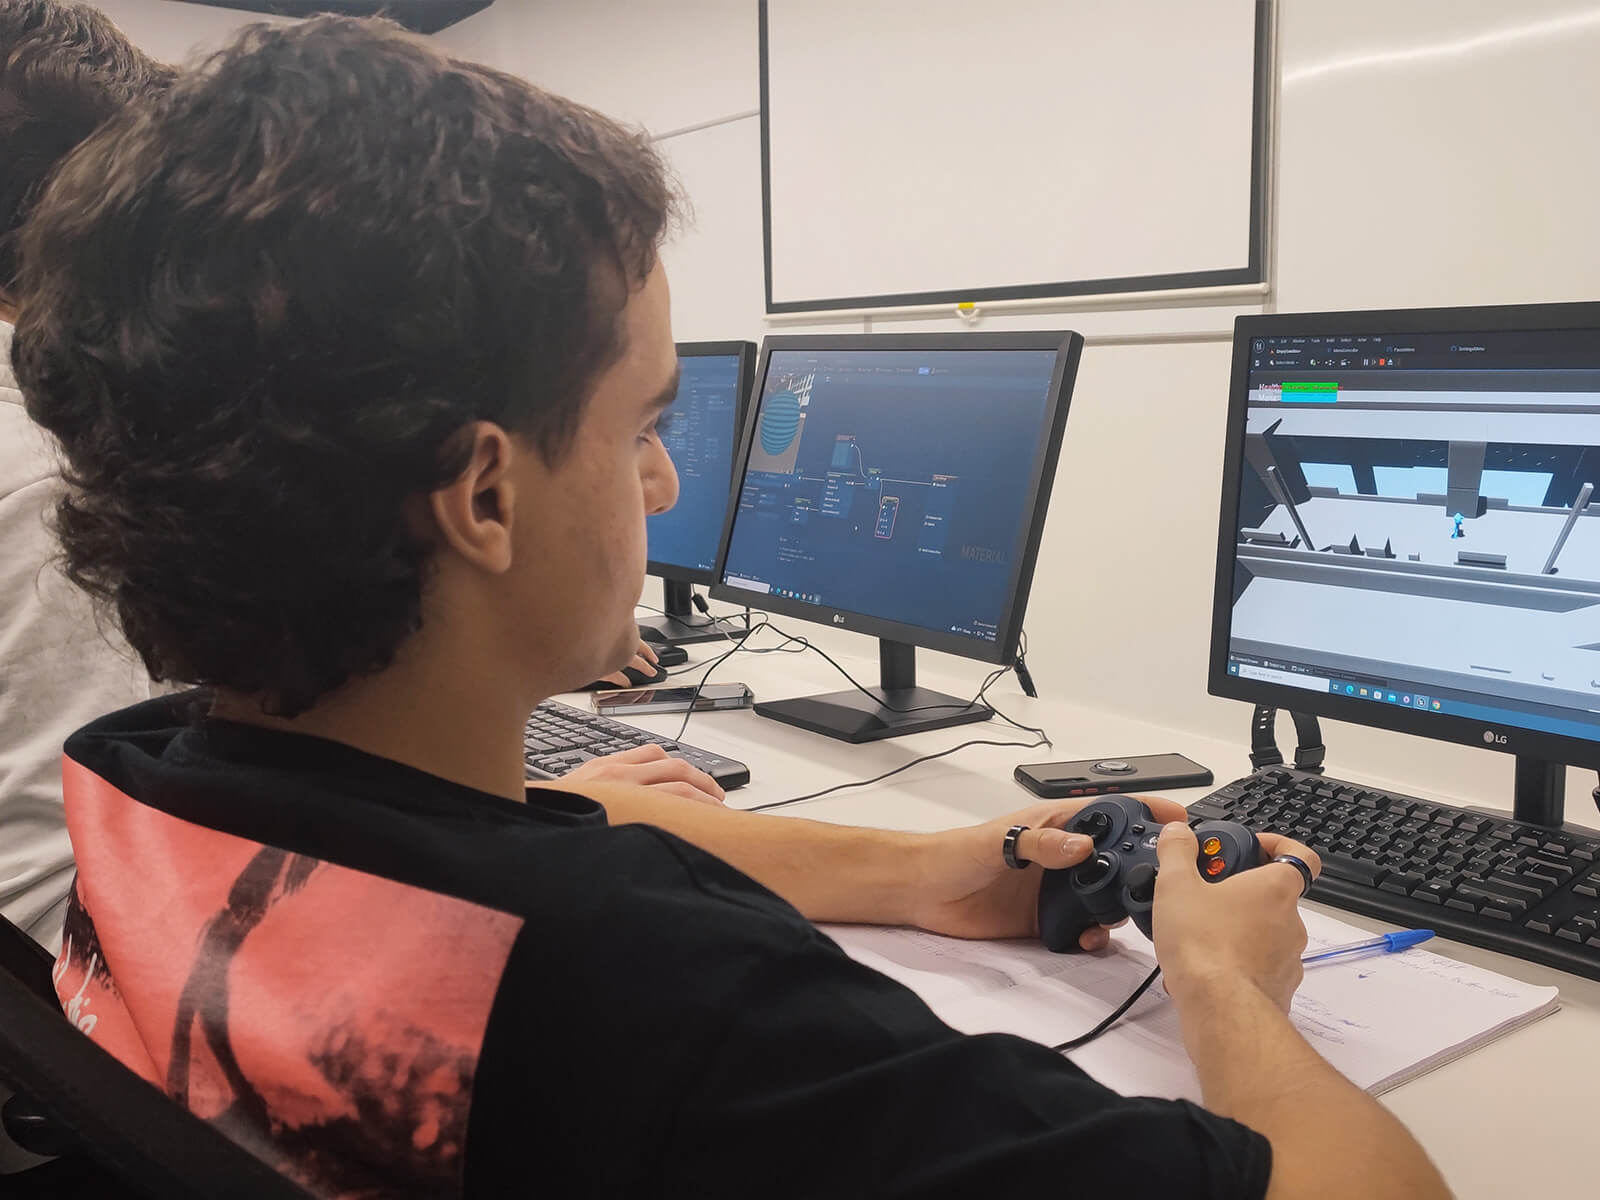 Un estudiante prueba una versión temprana de un juego mientras usa un controlador y mira un monitor.